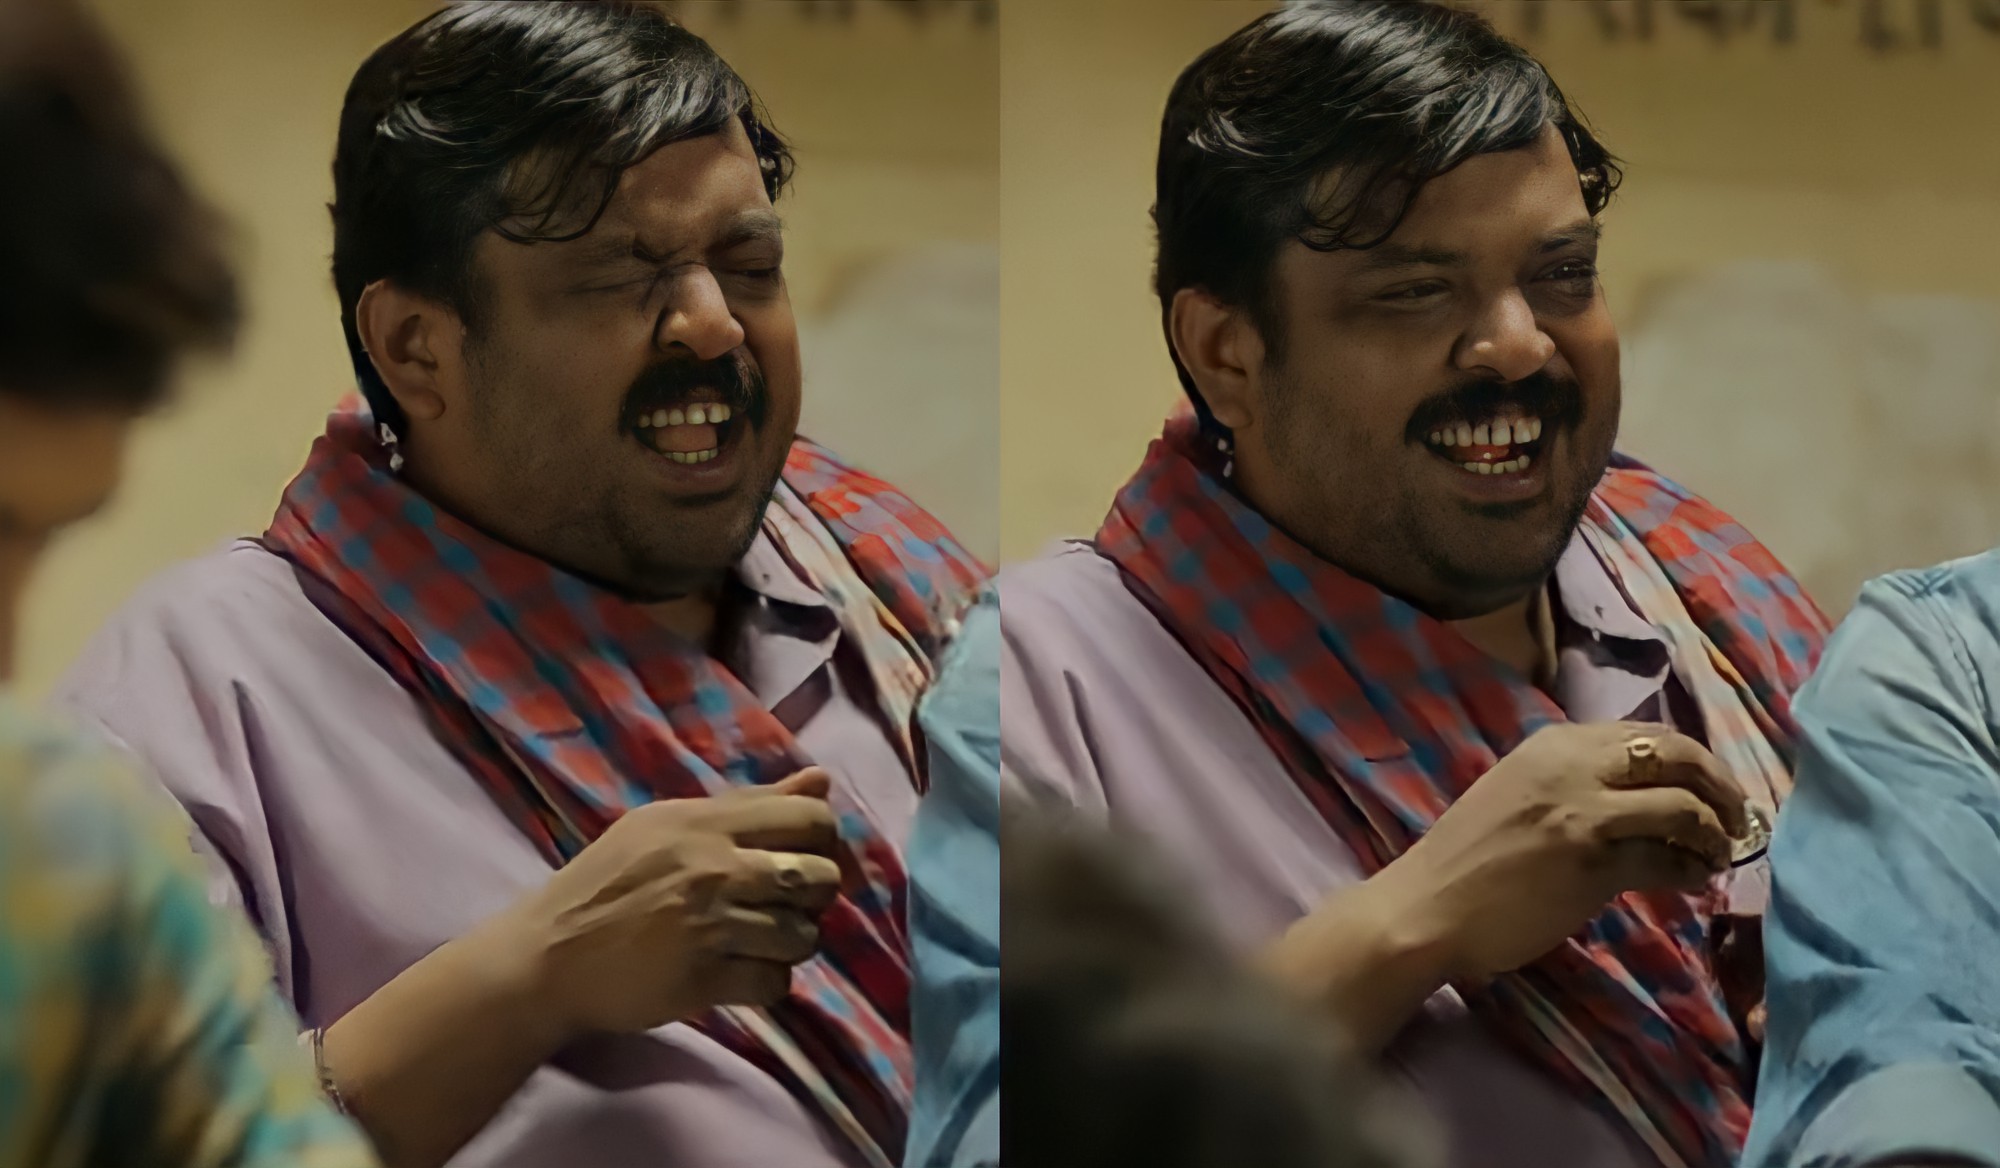 panchayat laughing scene